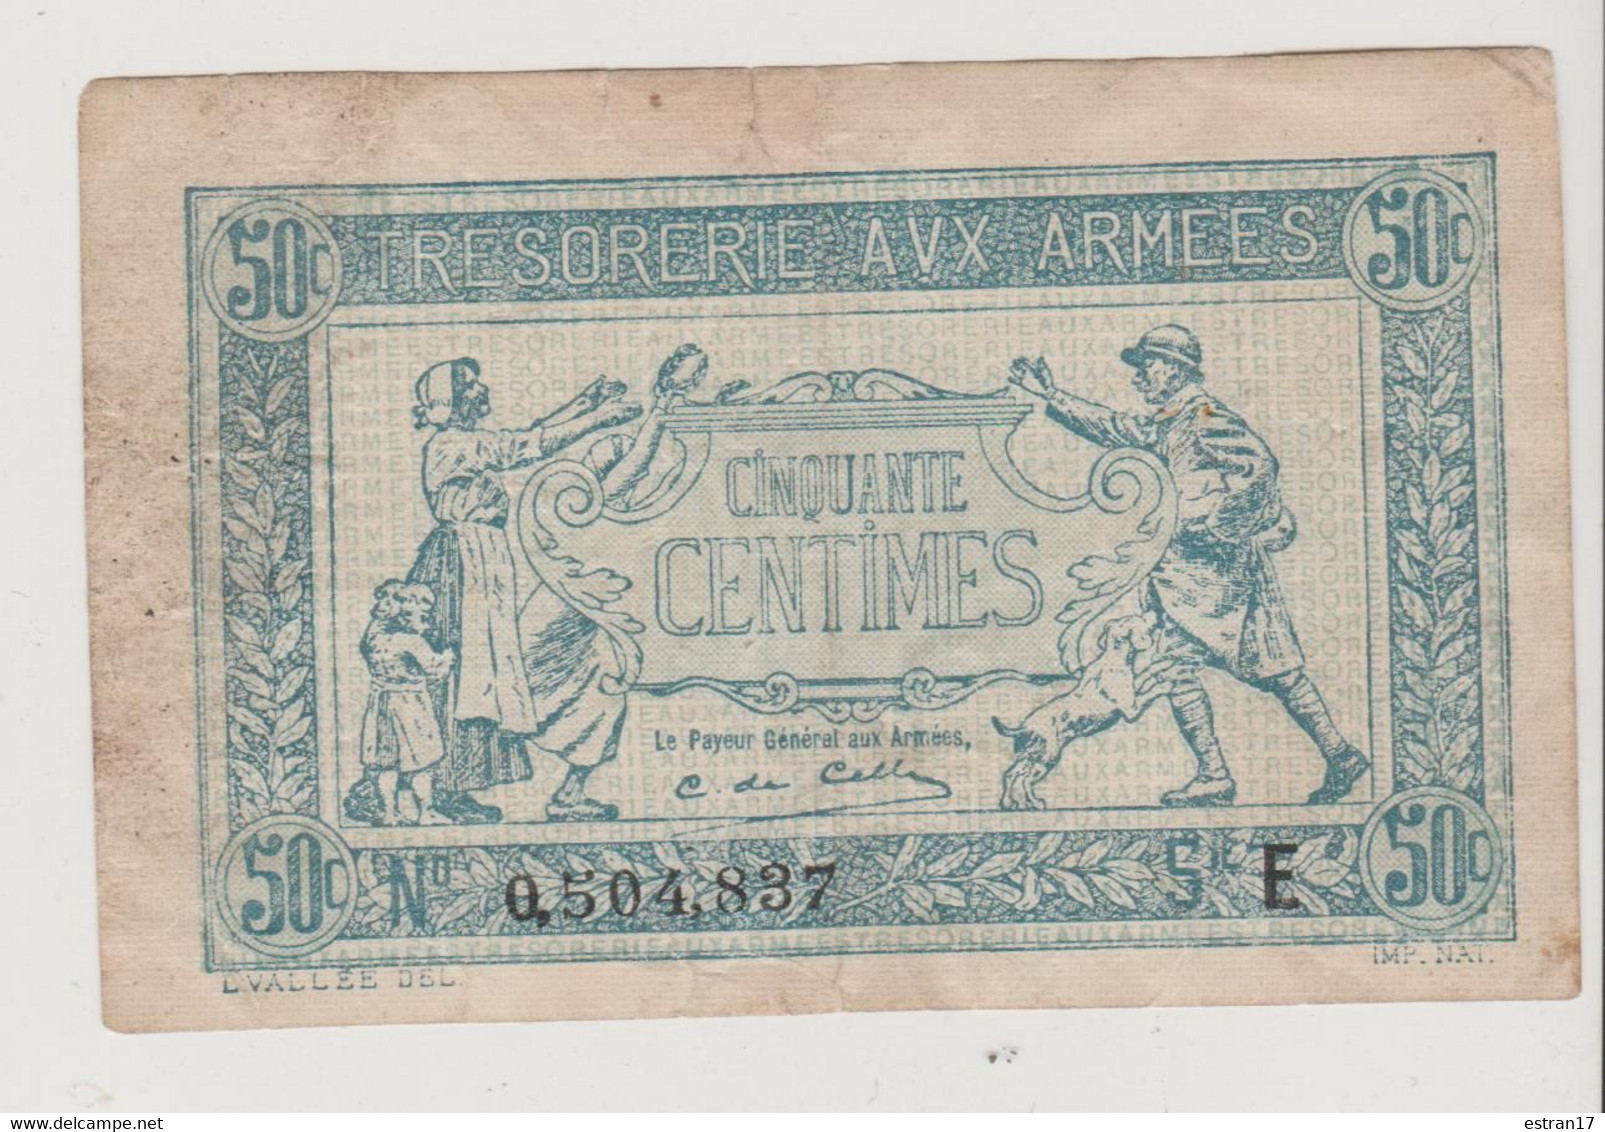 1 BILLET TRESORRERIE AUX ARMEES 50C - Lots & Kiloware - Banknotes